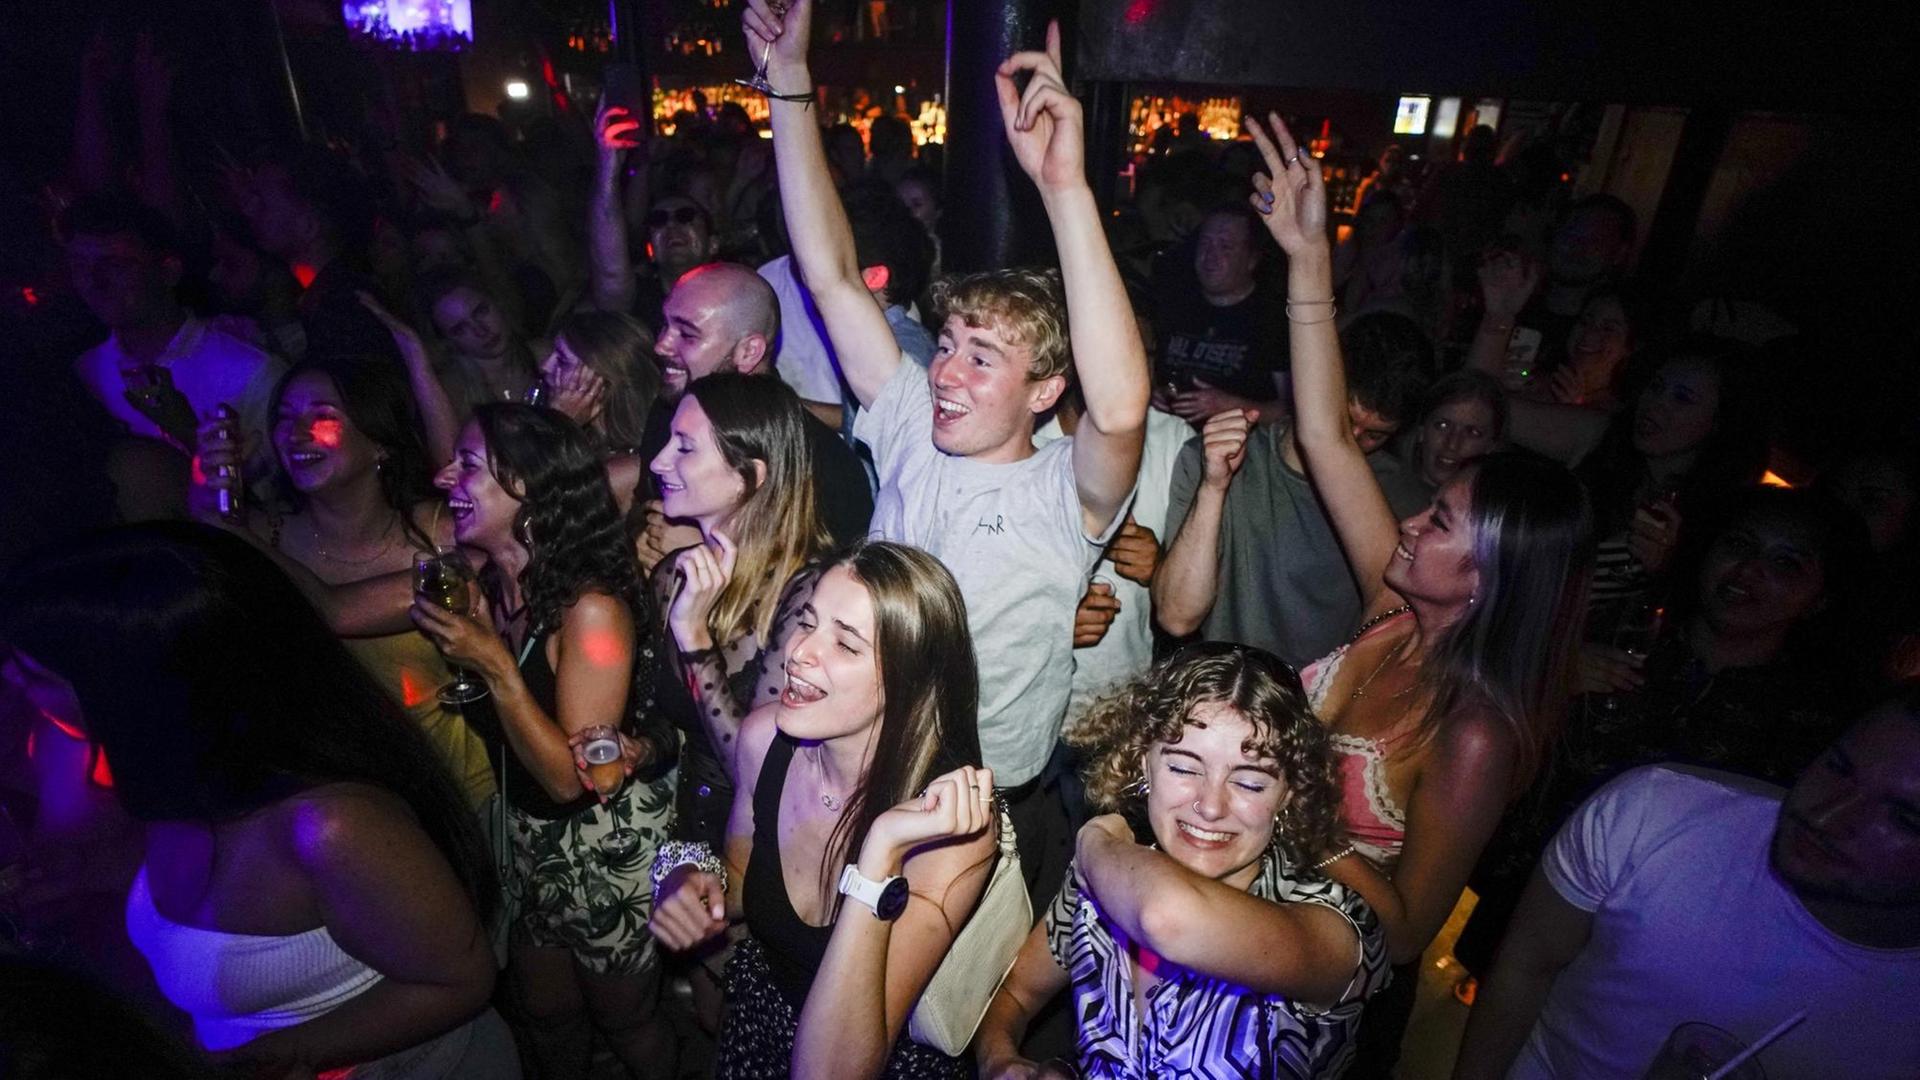 Junge Menschen feiern in einem Club. Sie tragen keine Masken und tanzen eng nebeneinander - so wie vor der Corona-Pandemie.